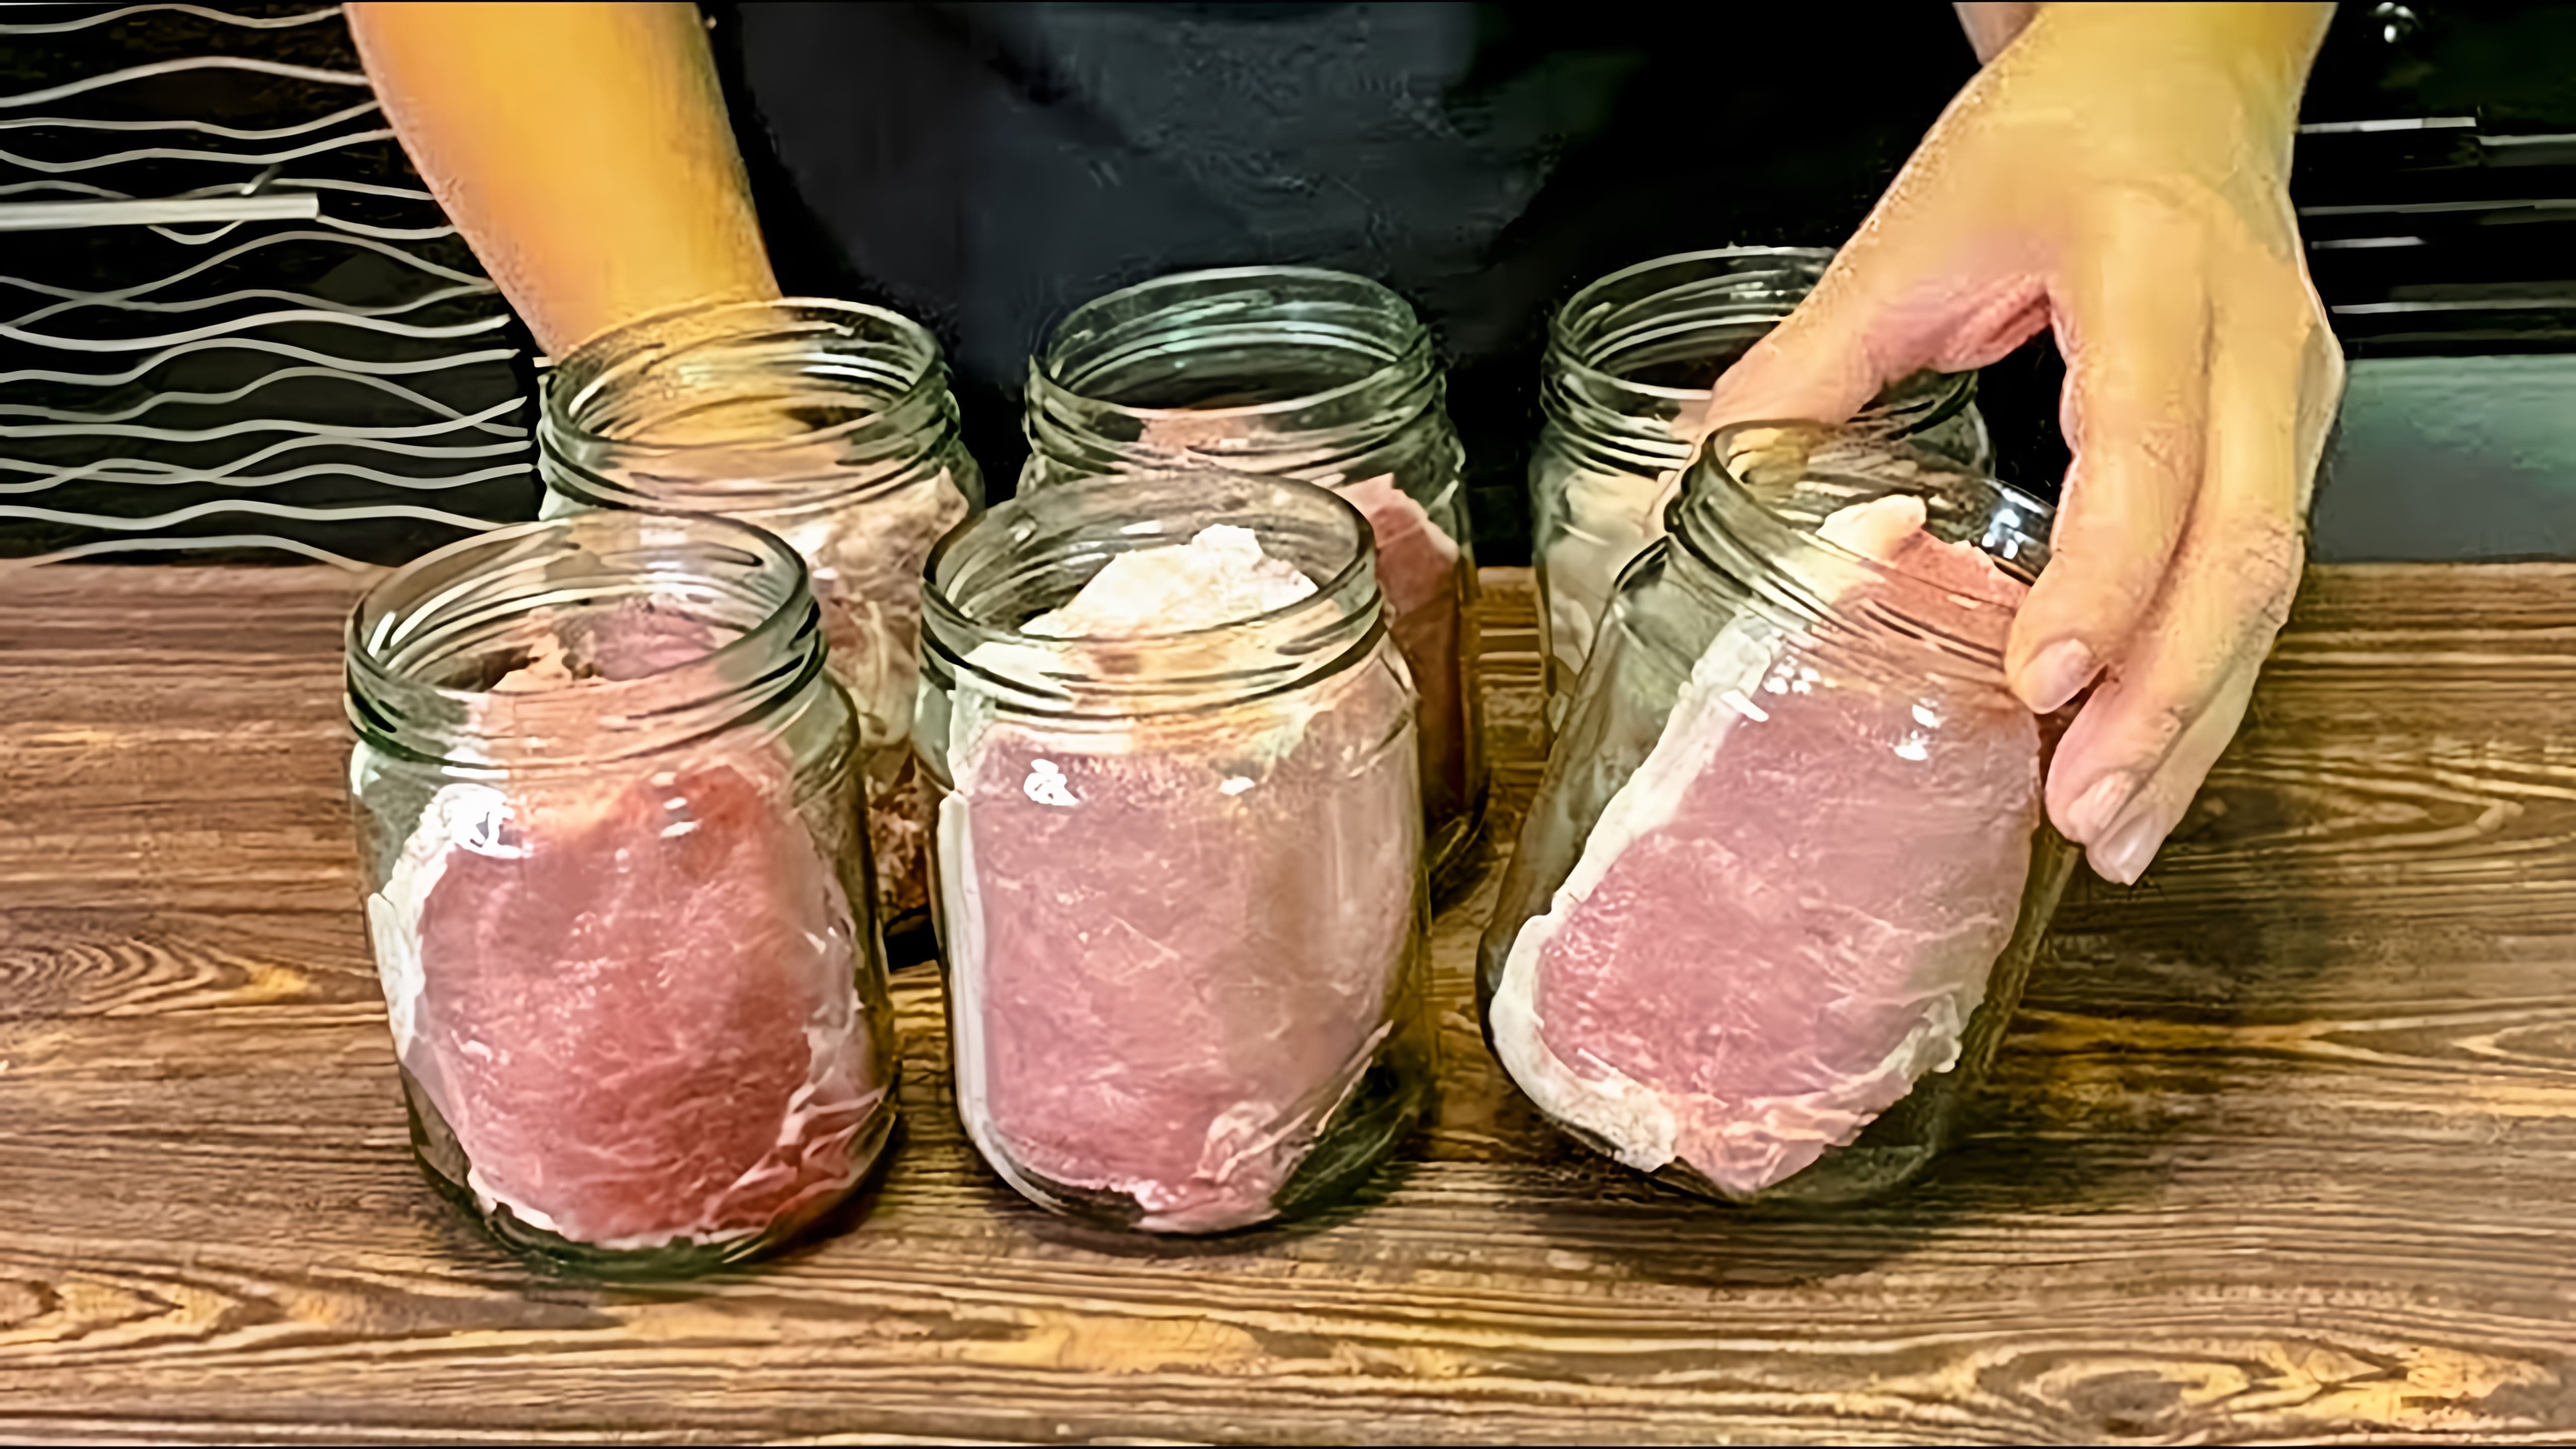 В этом видео демонстрируется процесс приготовления вкуснейшей закуски из мяса и сала на праздник